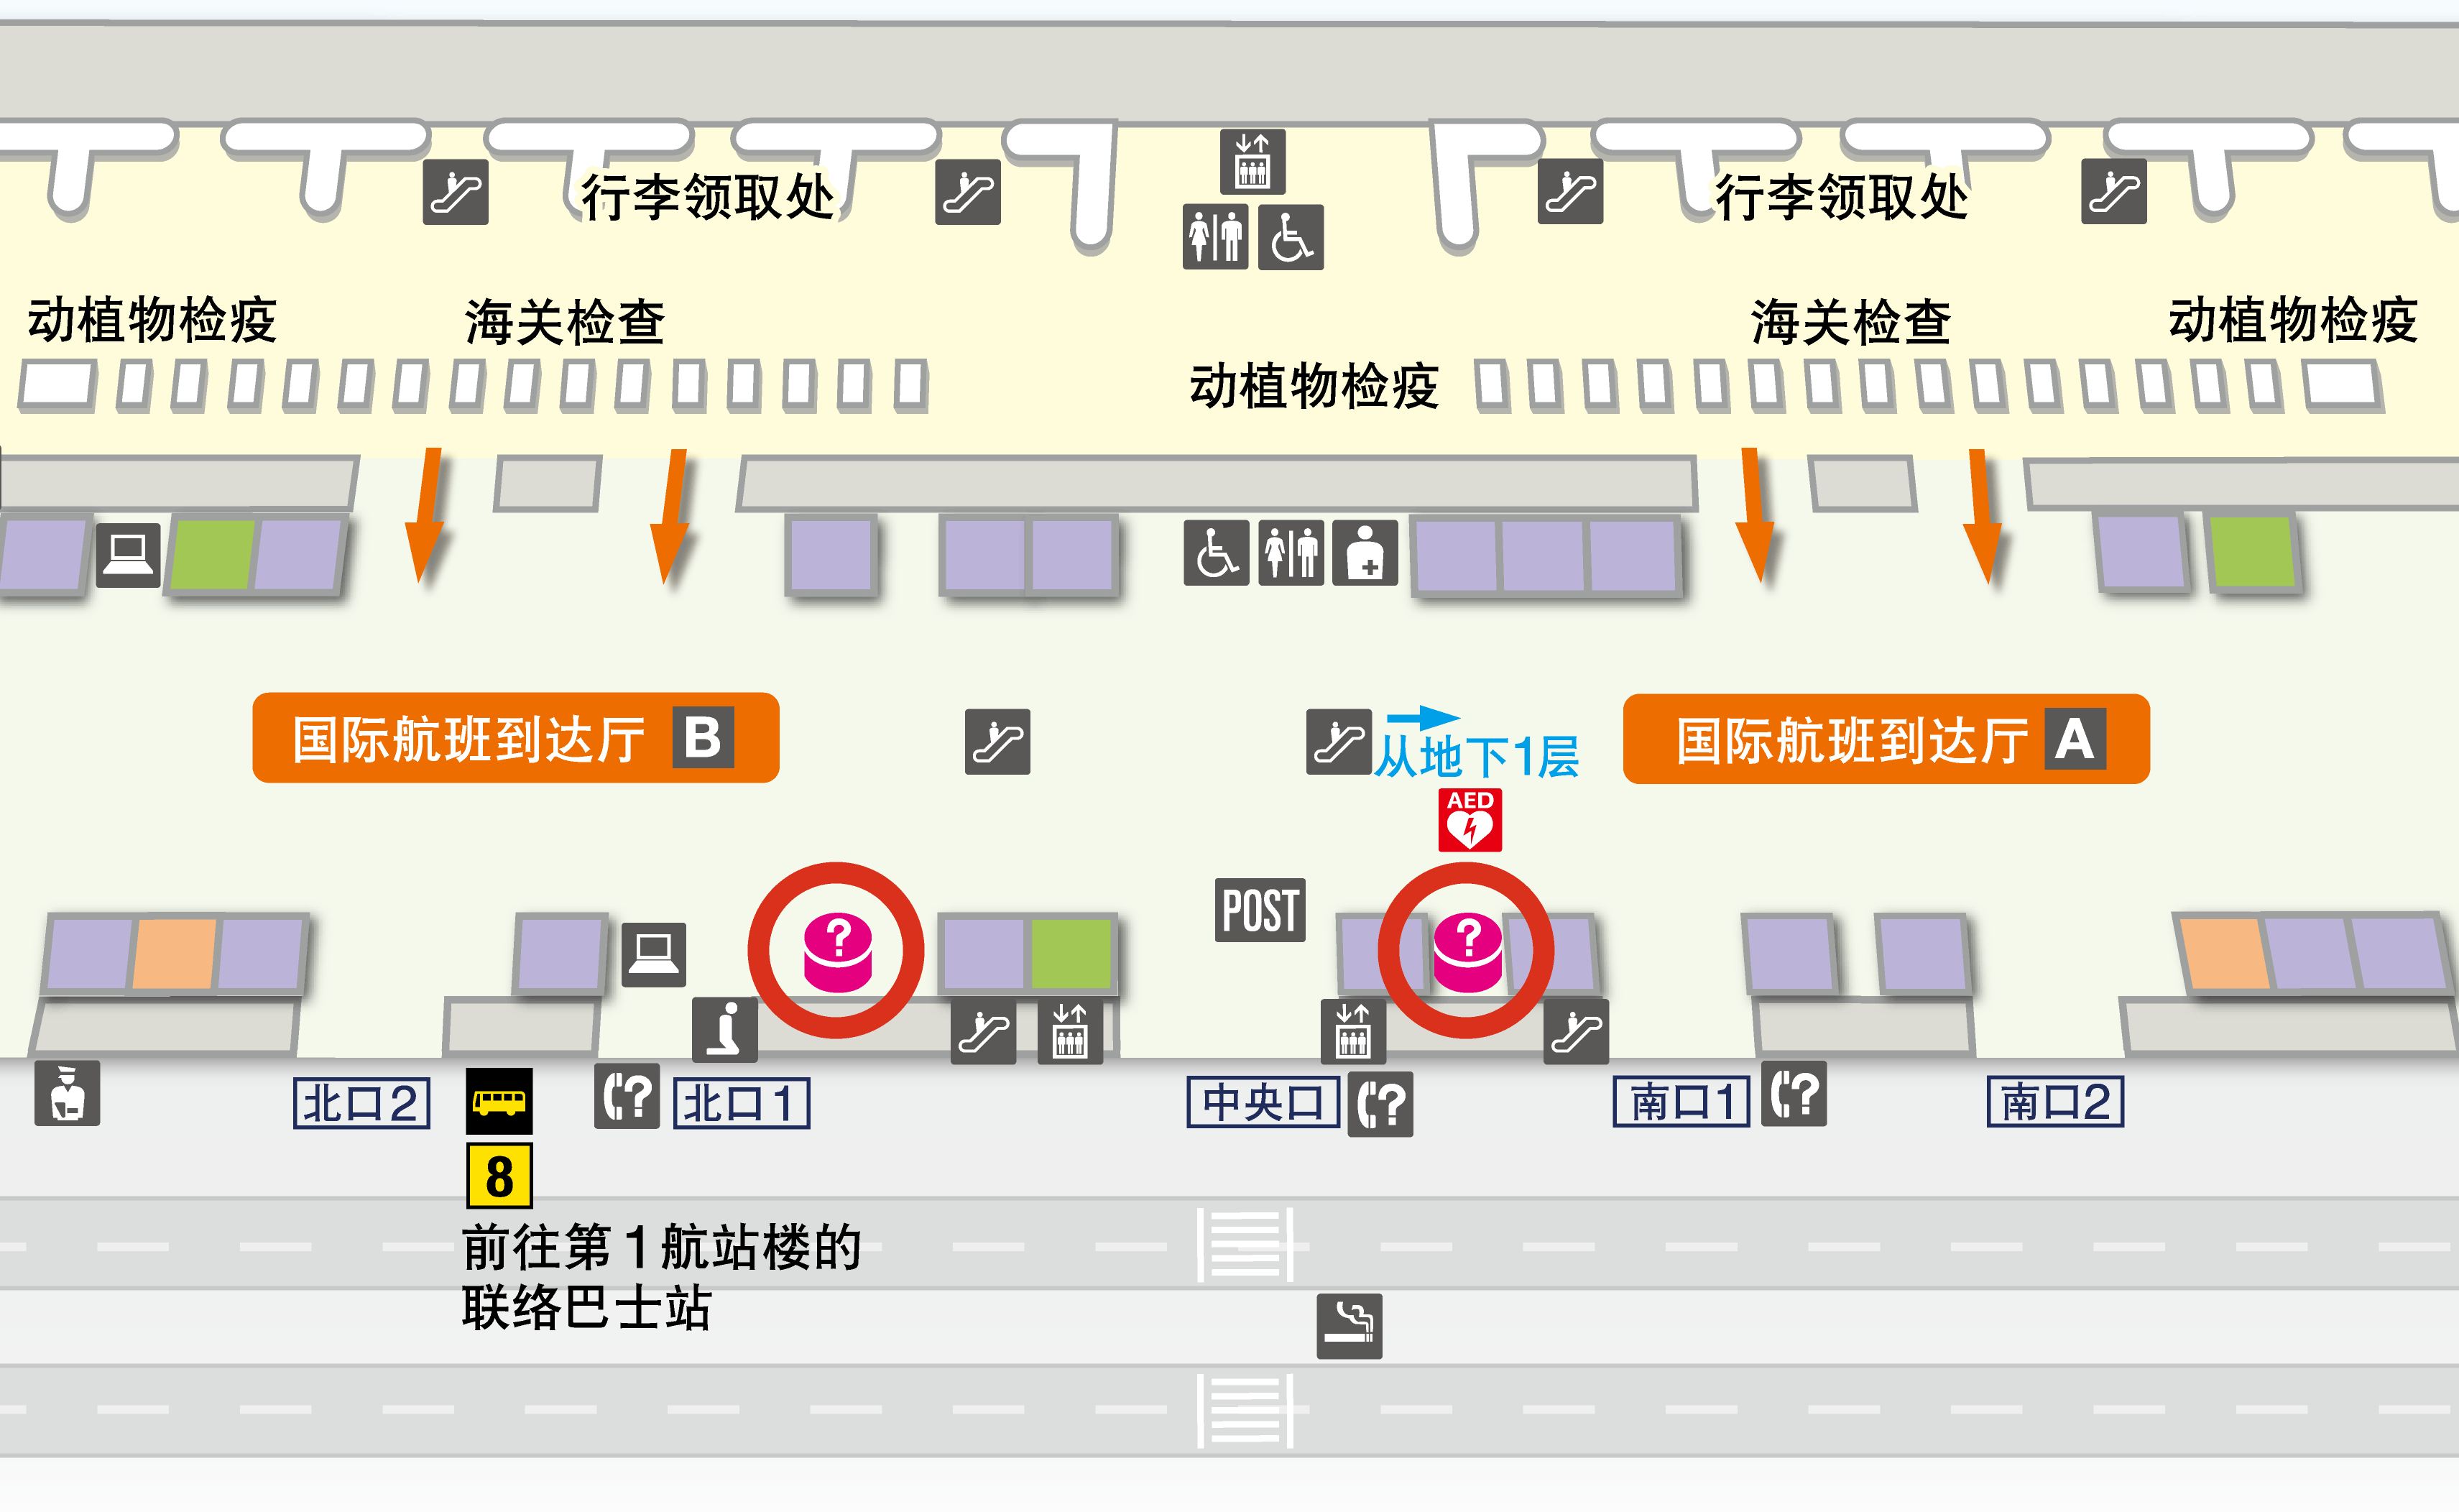 第2航站楼 1楼 国际到达大厅 楼层地图图示